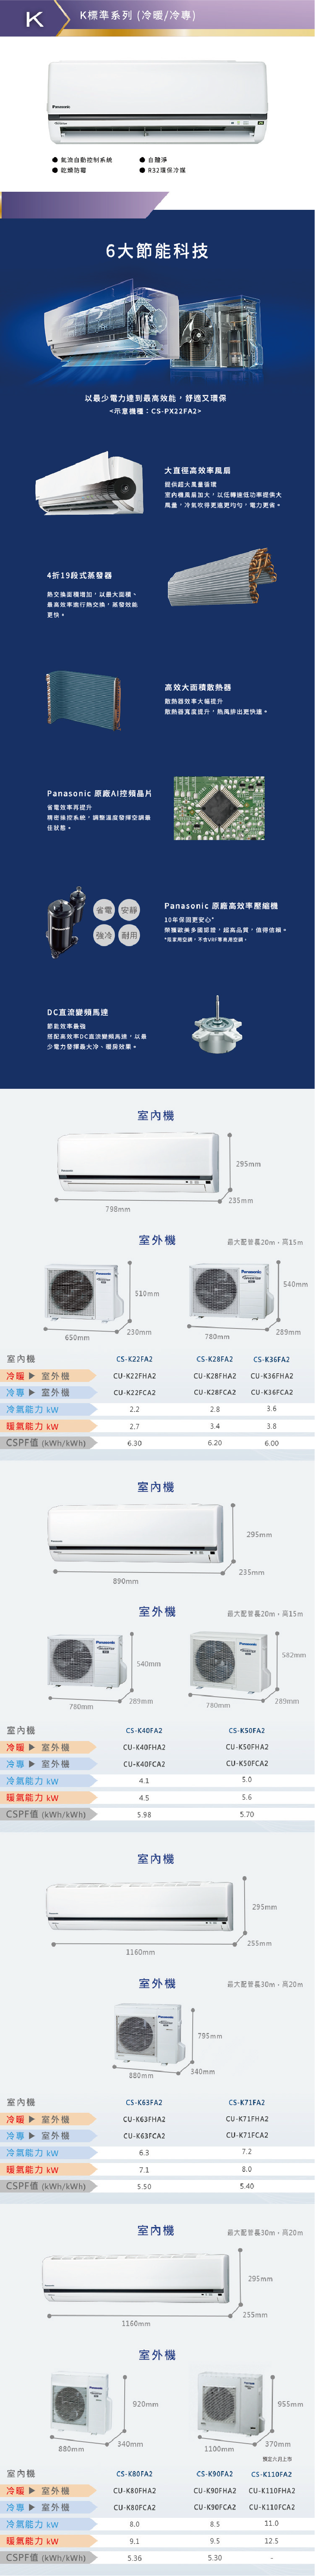 國際 CU-K63FCA2 10坪適用 K系列 分離式 變頻 冷專 冷氣 CS-K63FA2